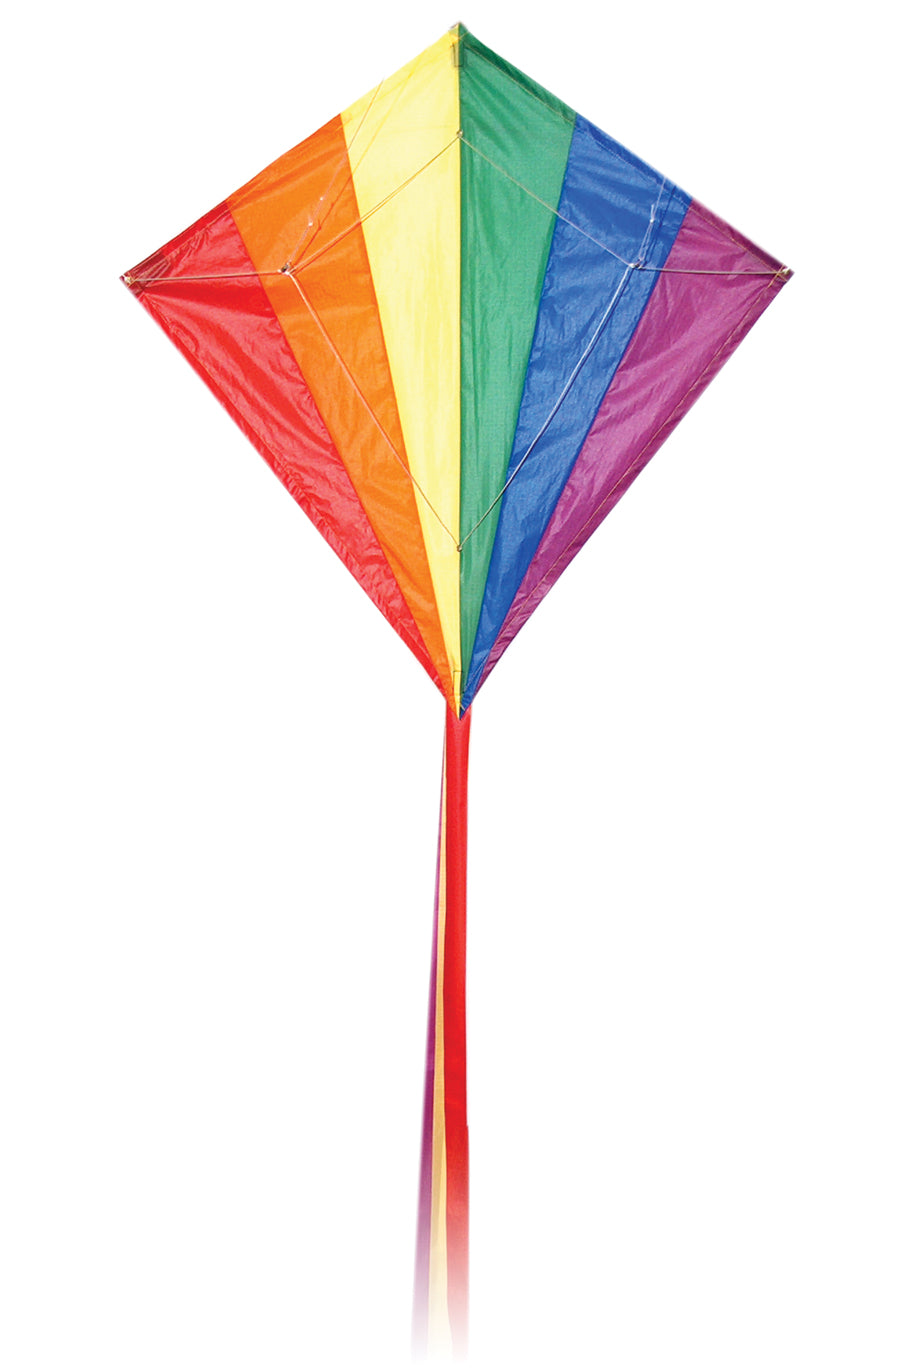 Diamond stunter kite from spirit of air dual line kite